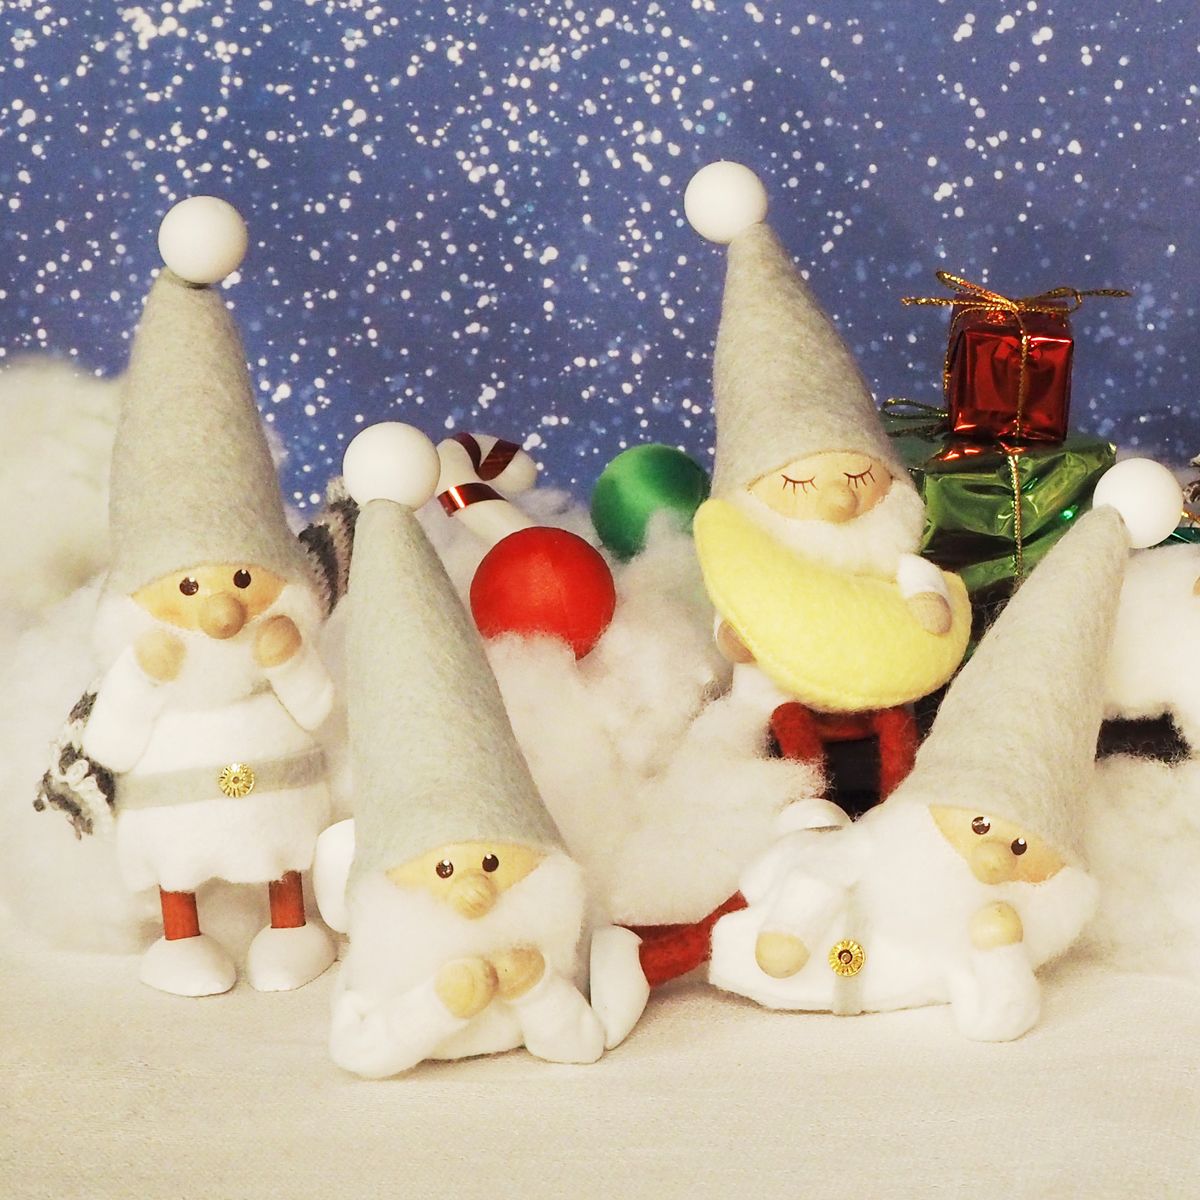 ノルディカ ニッセ クリスマス 木製人形 スカーフサンタ サイレントナイト